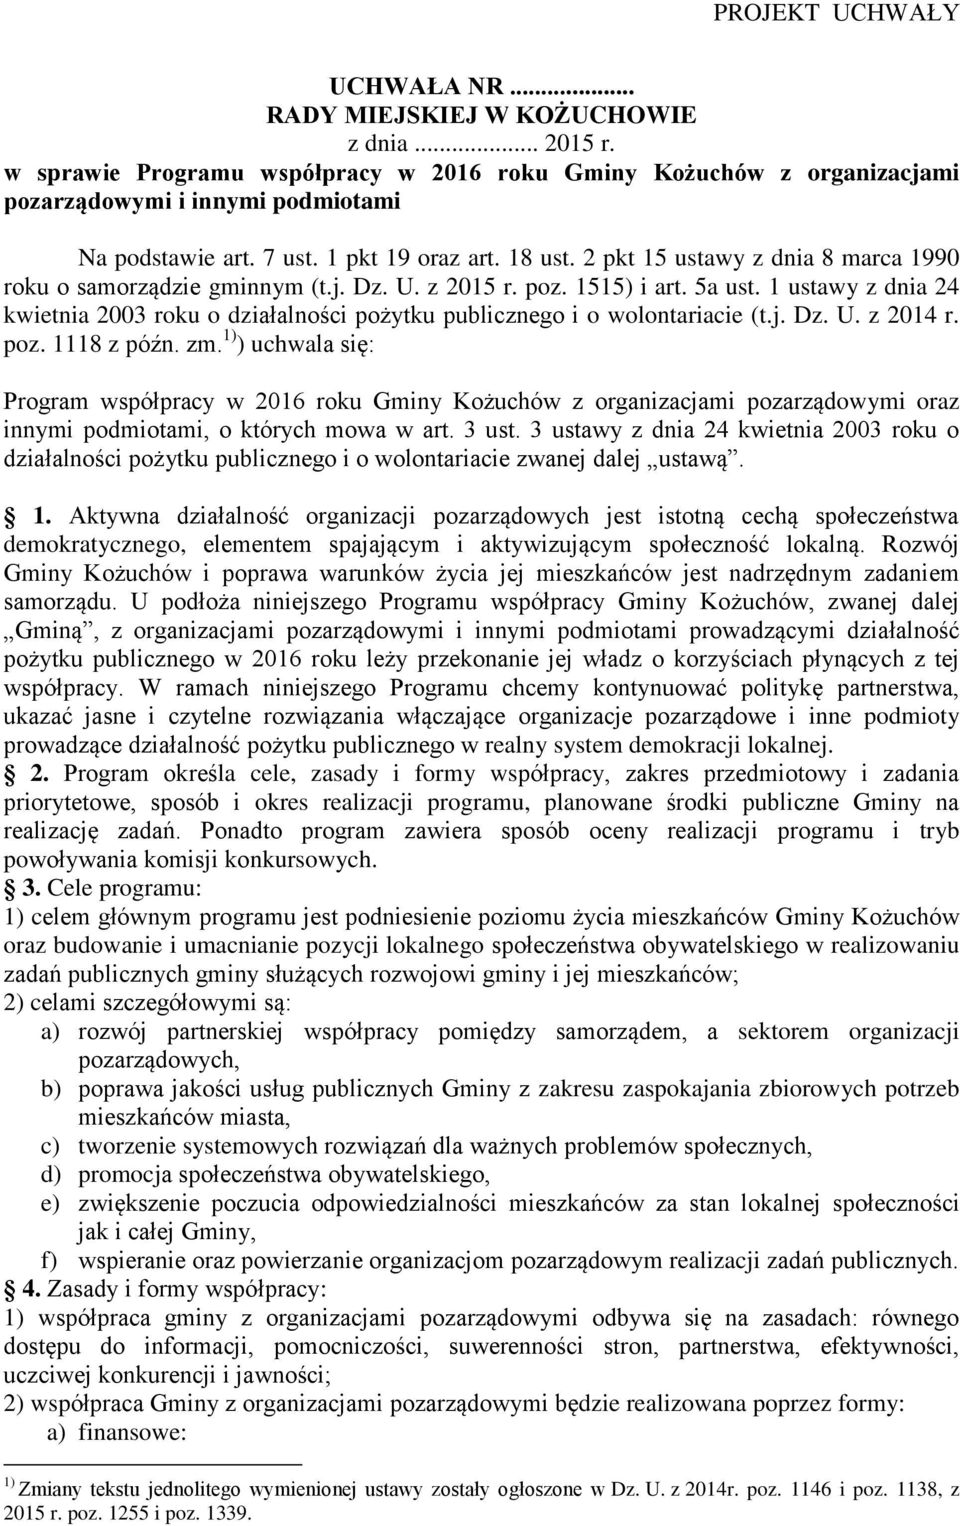 1 ustawy z dnia 24 kwietnia 2003 roku o działalności pożytku publicznego i o wolontariacie (t.j. Dz. U. z 2014 r. poz. 1118 z późn. zm.